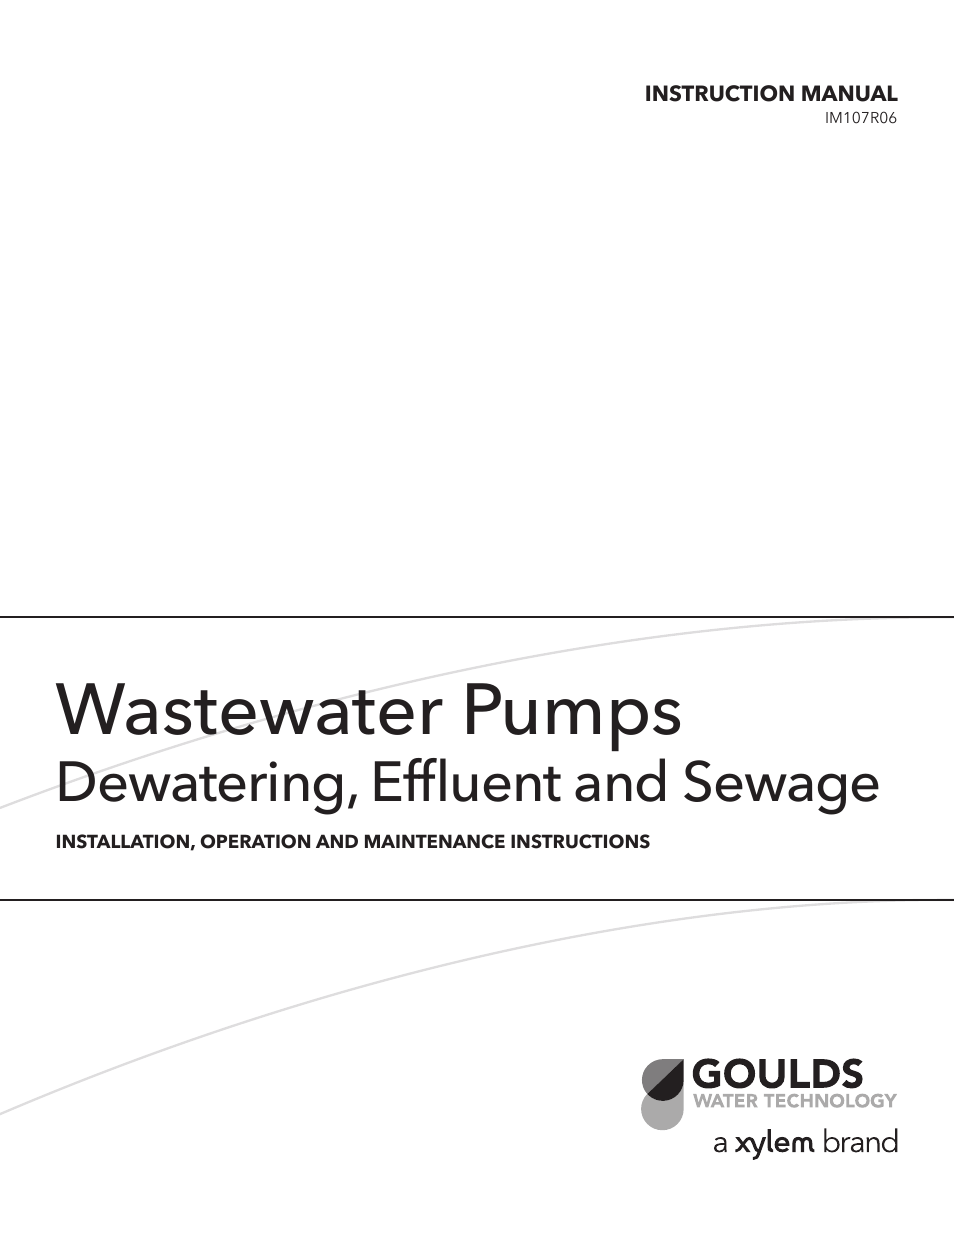 IM107R06 Wastewater Pumps Dewatering, Effluent and Sewage